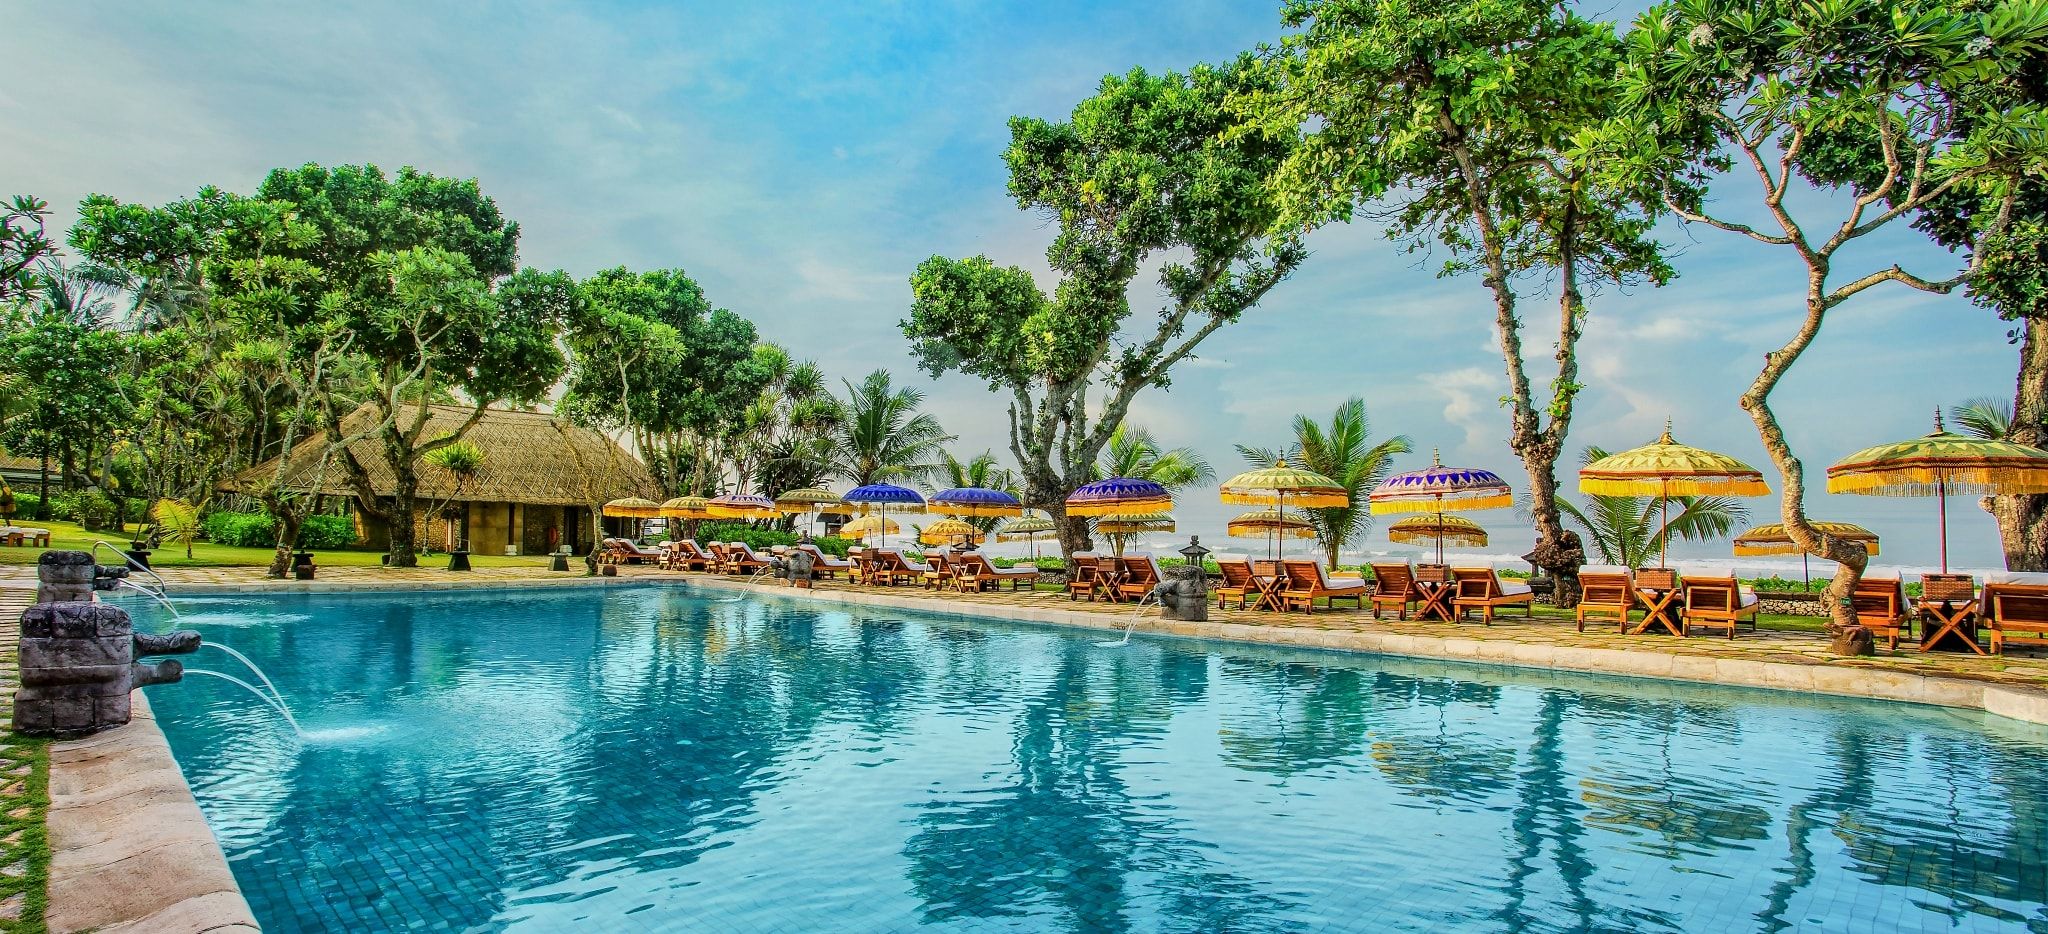 Der Hauptpoolbereich am Meer des Hotels Oberoi Bali